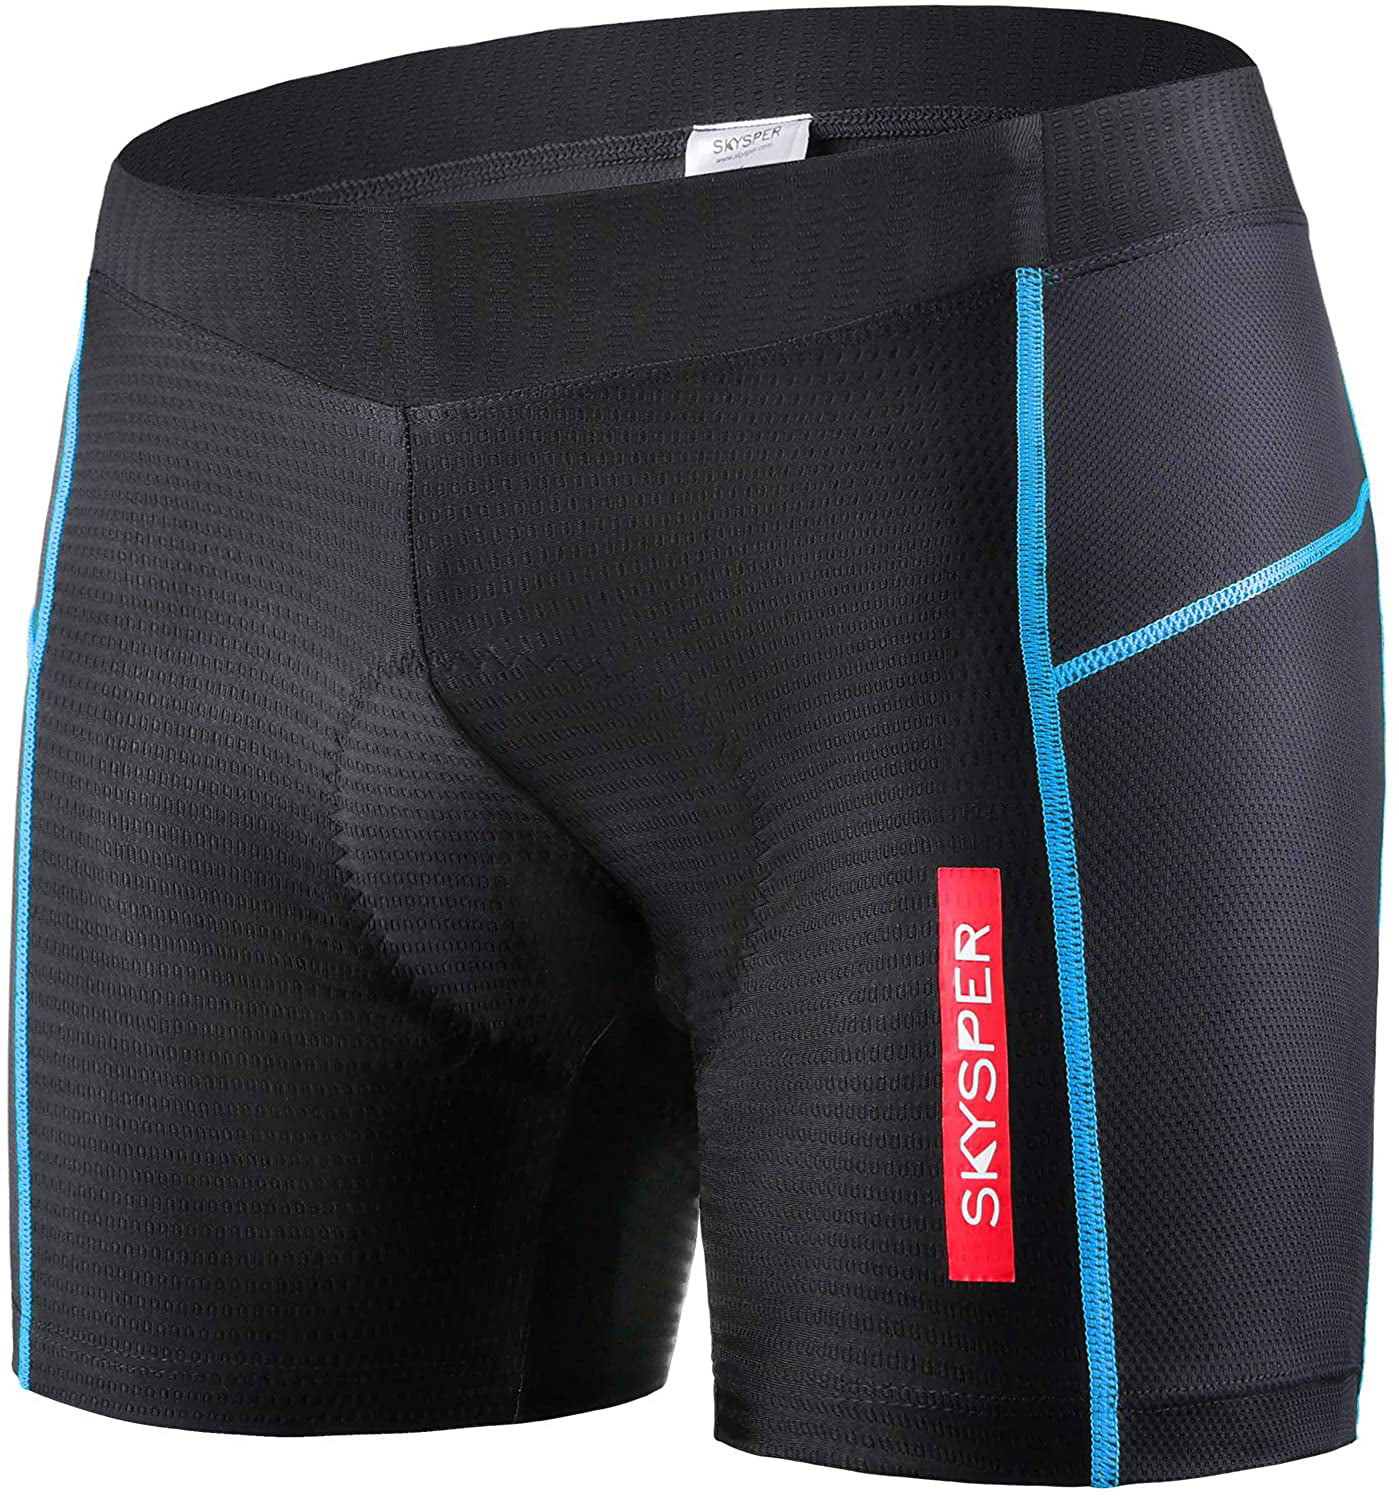 Anti-Bac DIY 5D silicone gel Padded Bike Cycling Underwear MTB Shorts Breathable 